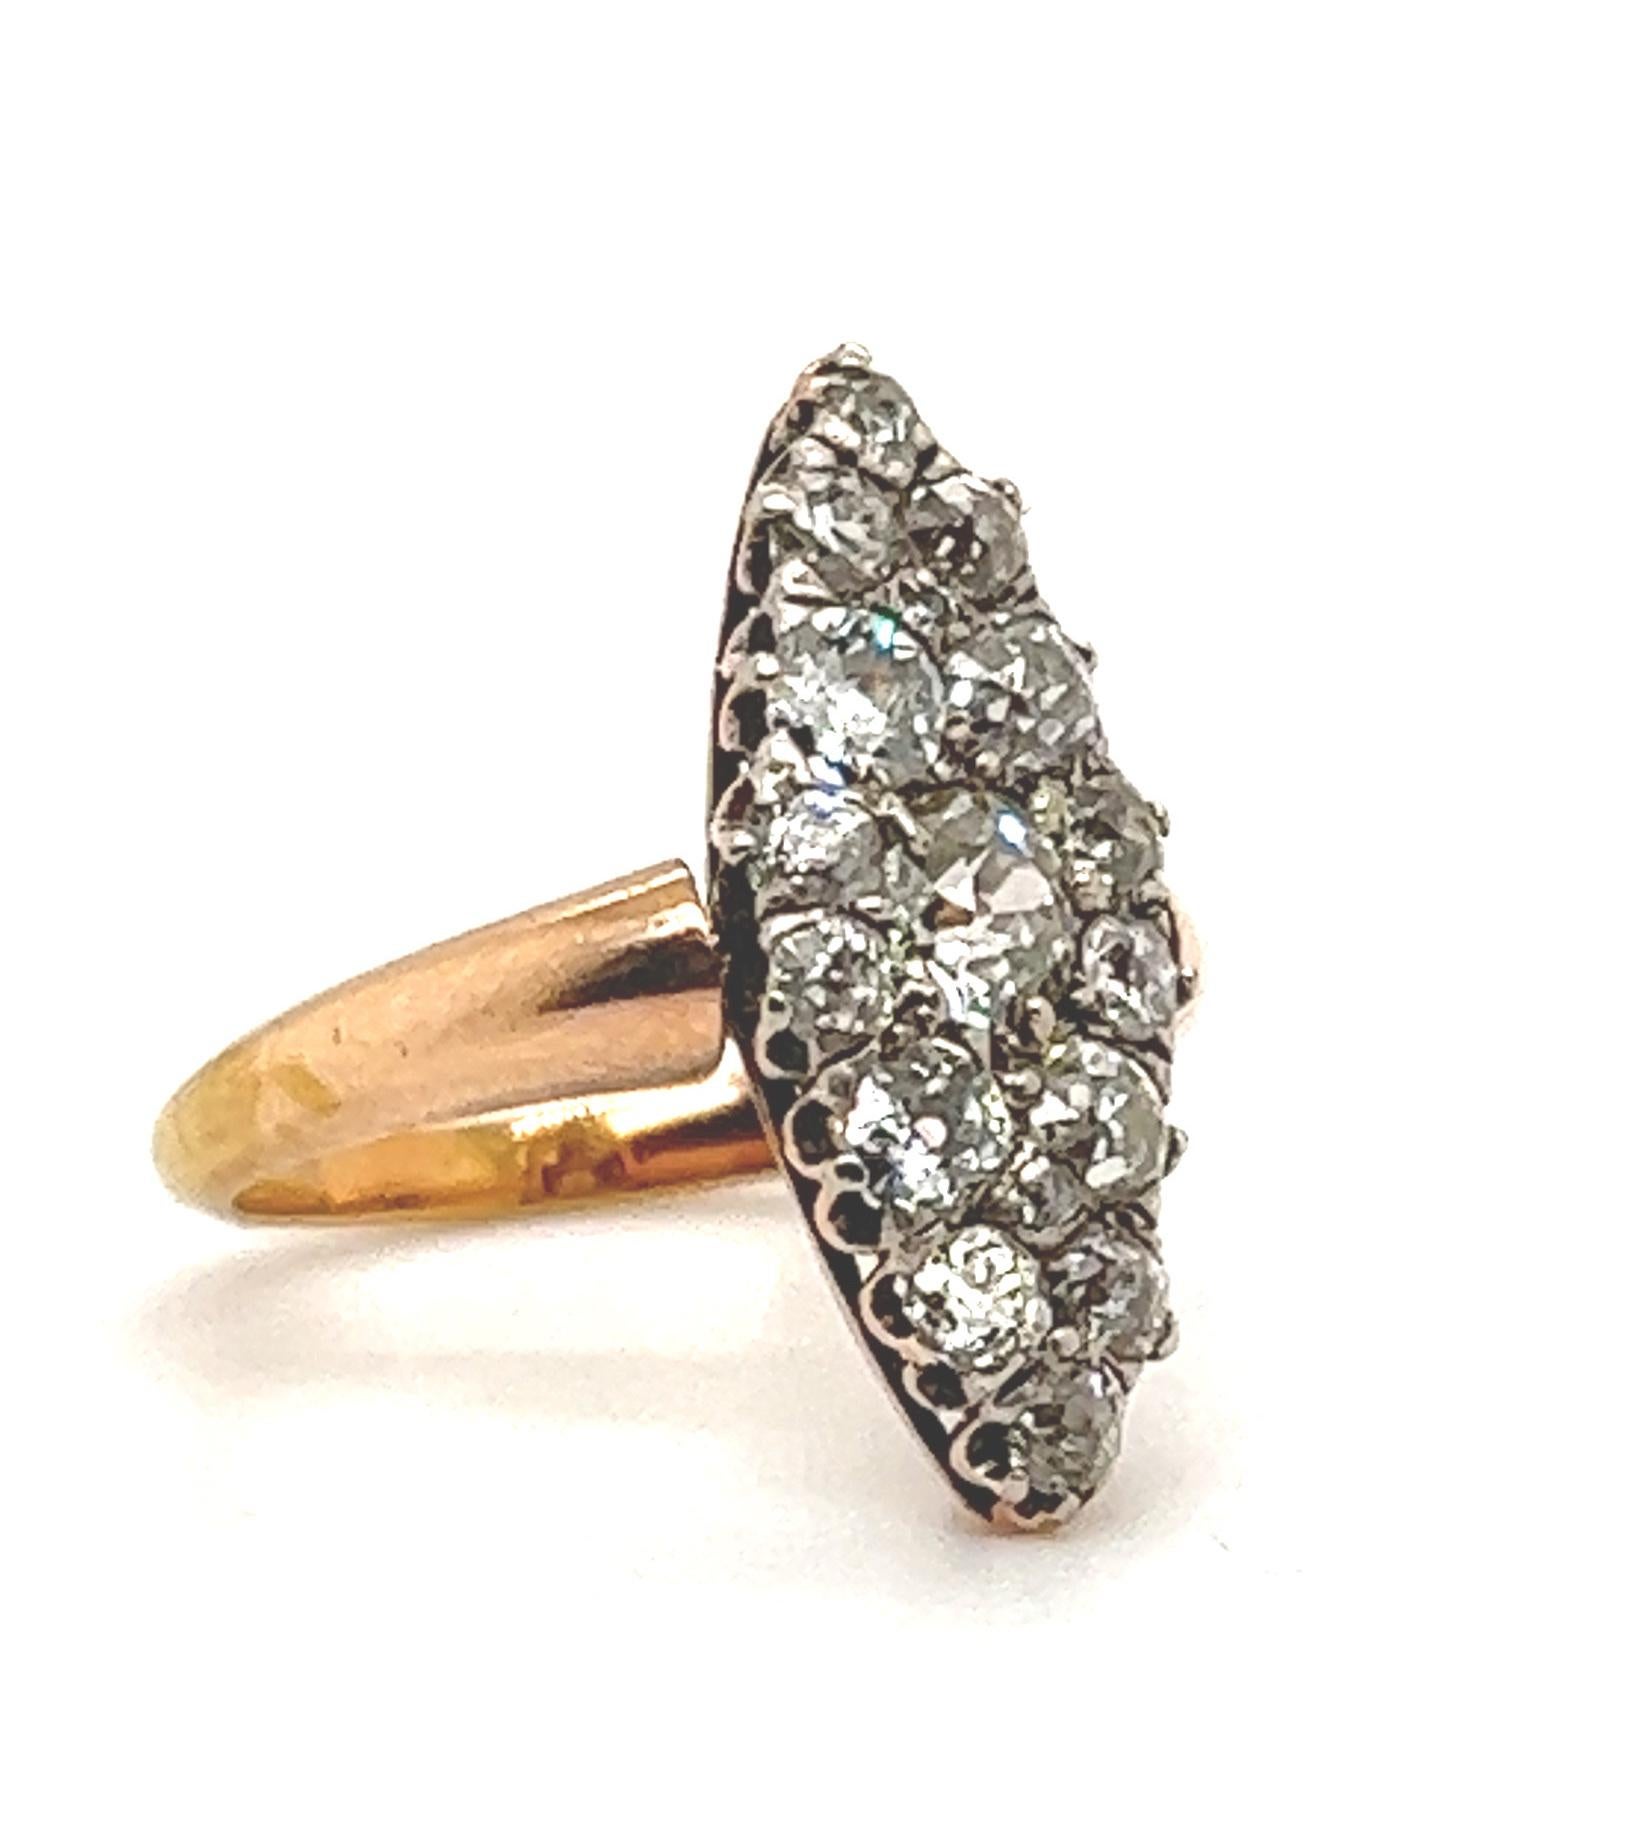 Un design élégant et classique pour cette bague victorienne à navette de diamants. L'anneau est serti de diamants taille ancienne en forme de grappe. Tous les diamants du dessin sont de taille progressive, comme s'il s'agissait d'un grand diamant